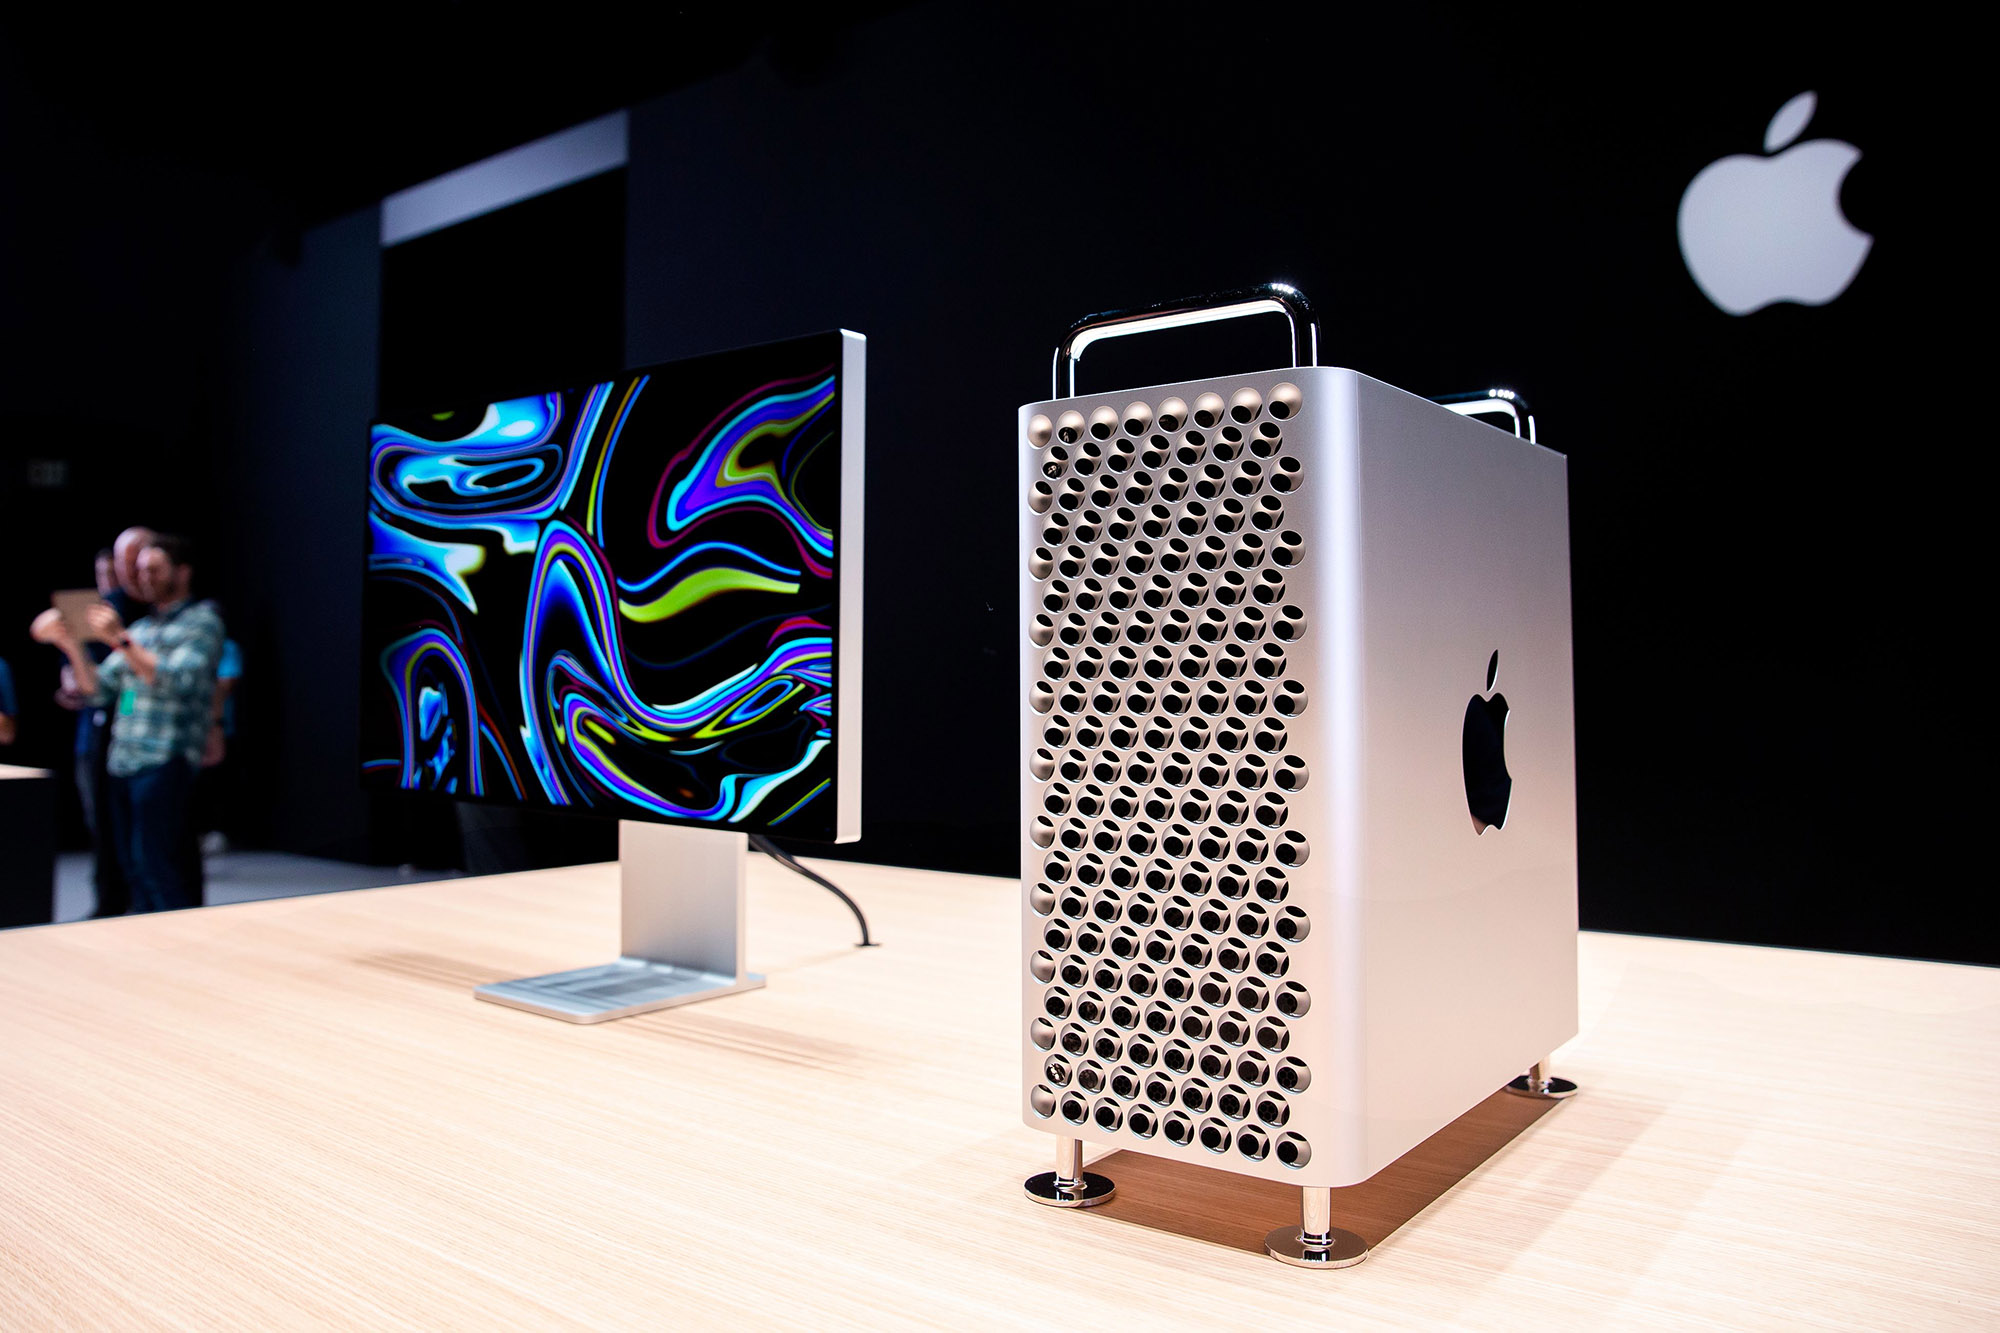 O novo Mac Pro da Apple está em exibição no showroom durante a Conferência Mundial de Desenvolvedores da Apple (WWDC).